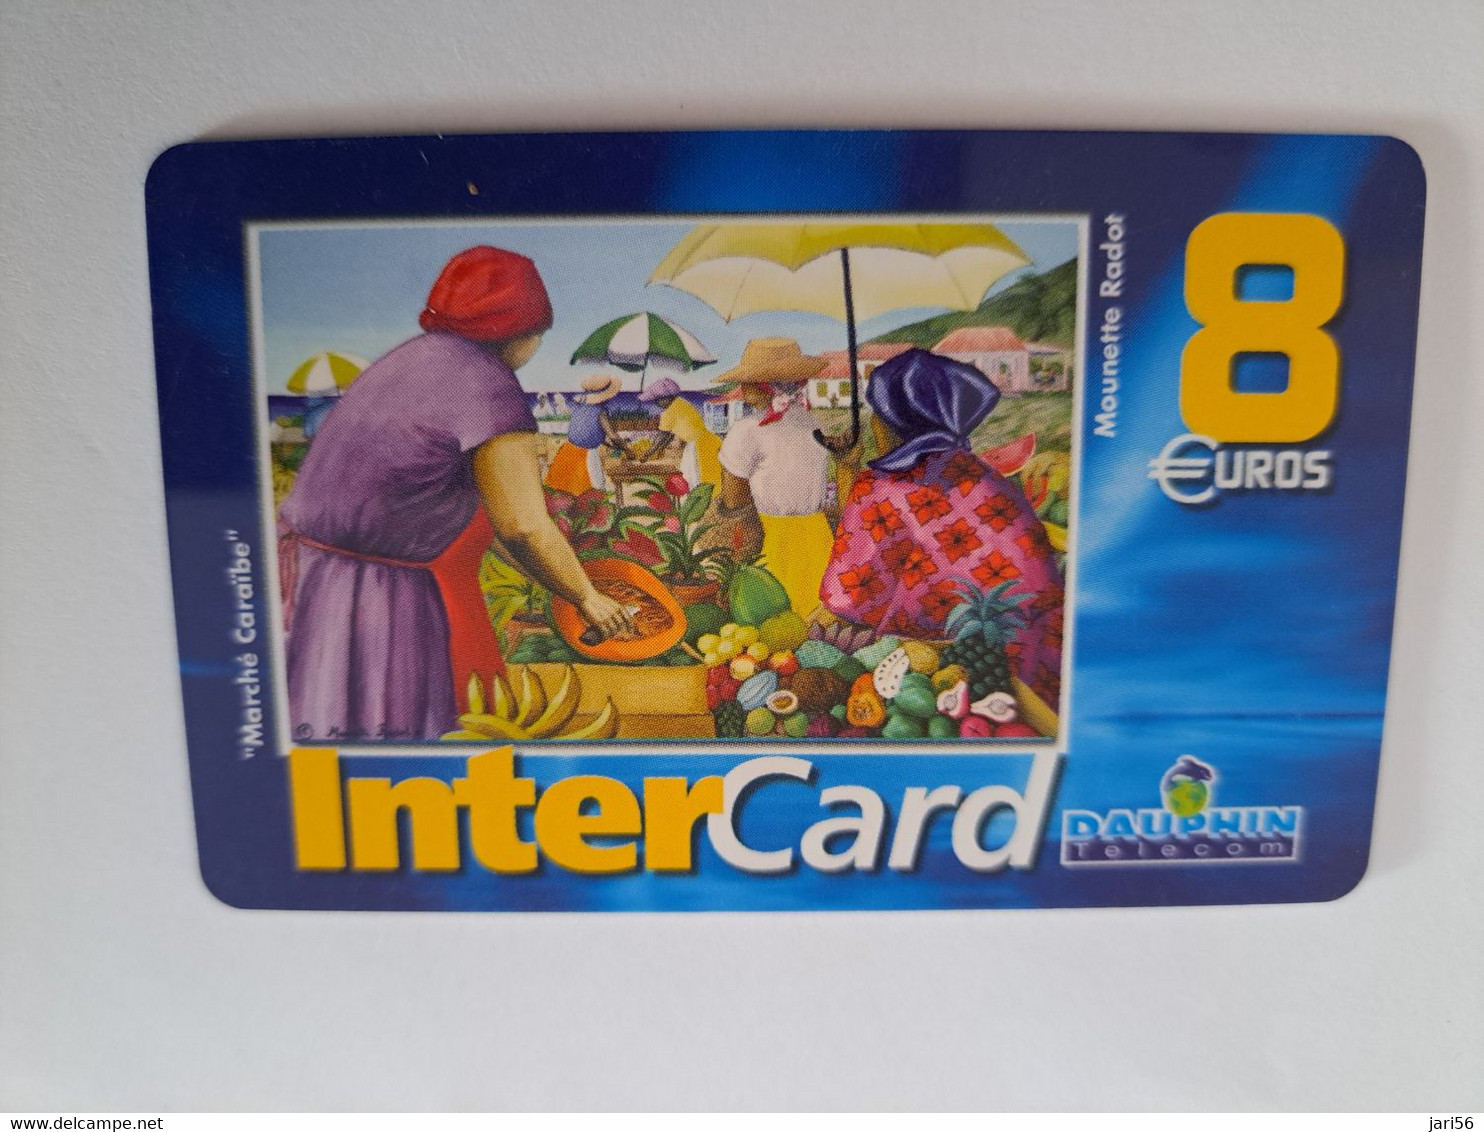 ST MARTIN / INTERCARD  8 EURO  MARCHE CARAIBE         NO 045  Fine Used Card    ** 10902** - Antillen (Französische)